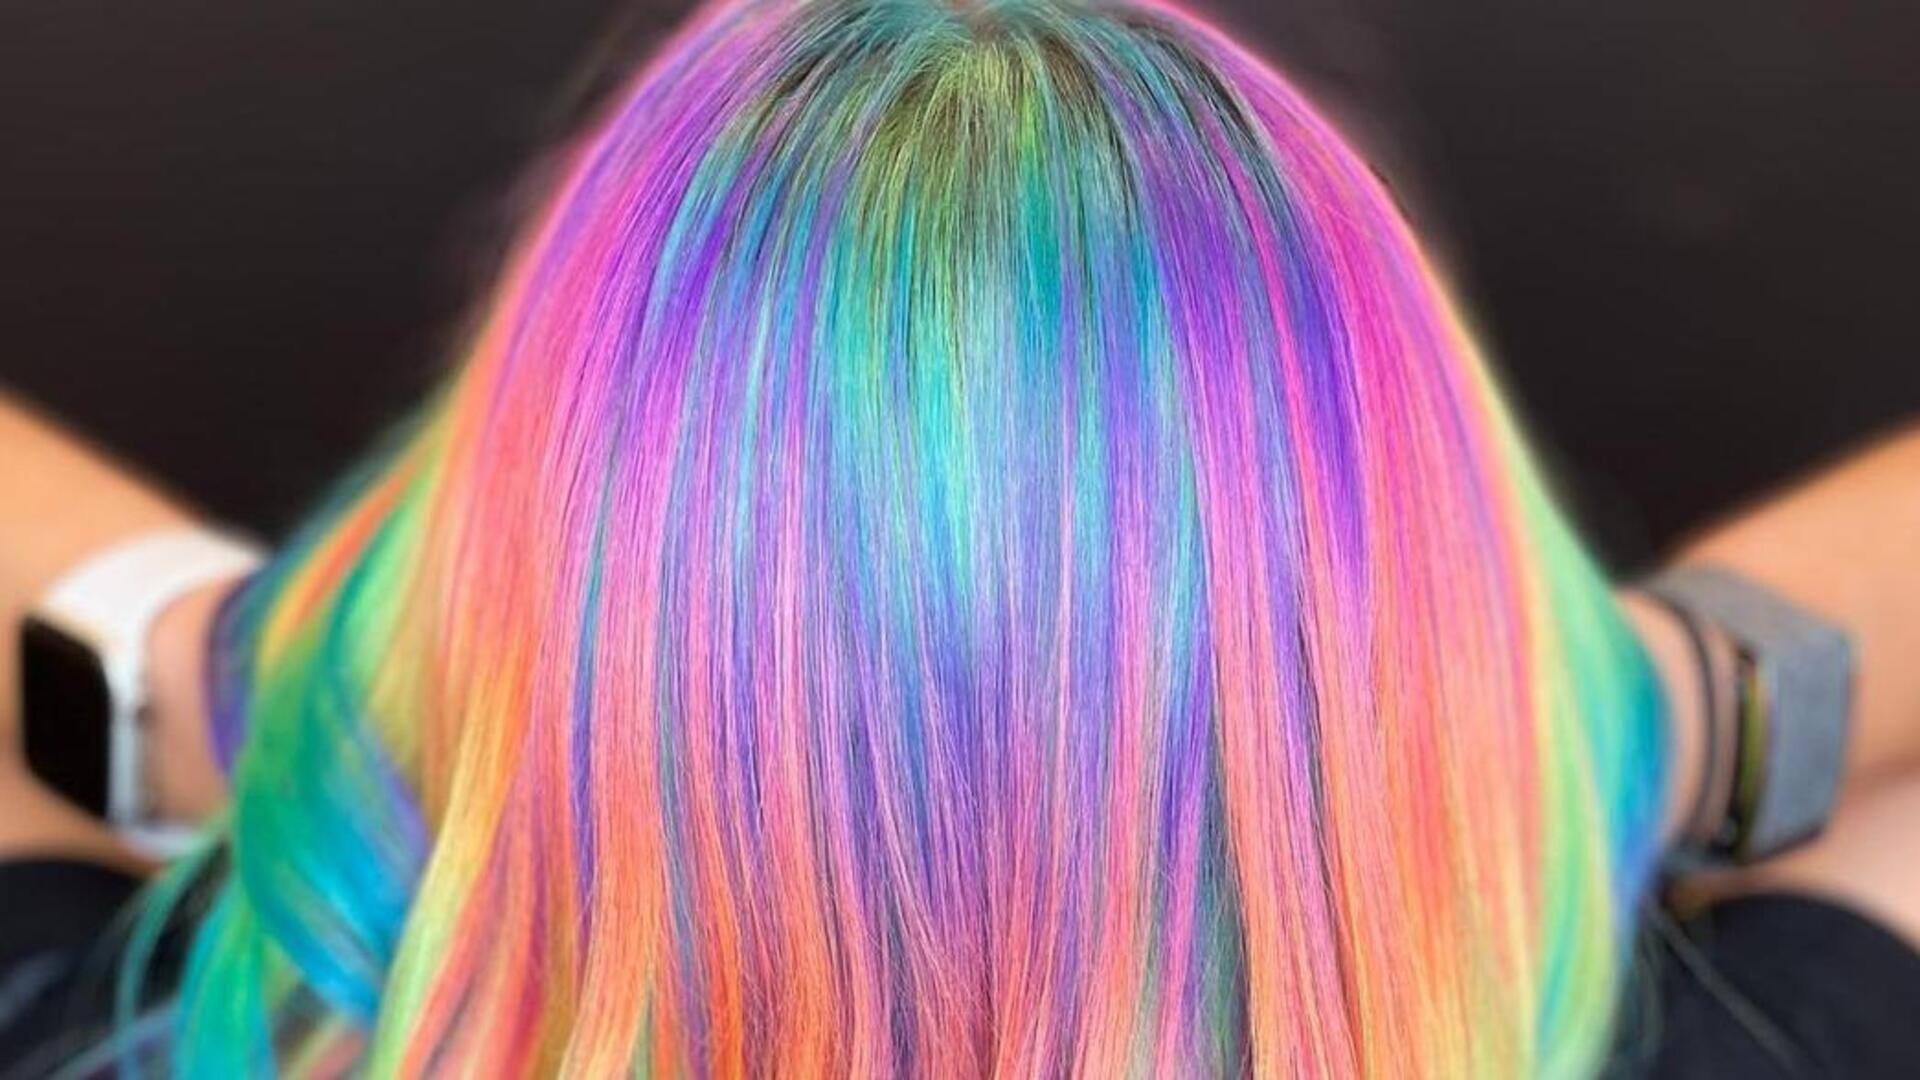 Prism hair: Seni dan keindahan dalam spektrum warna